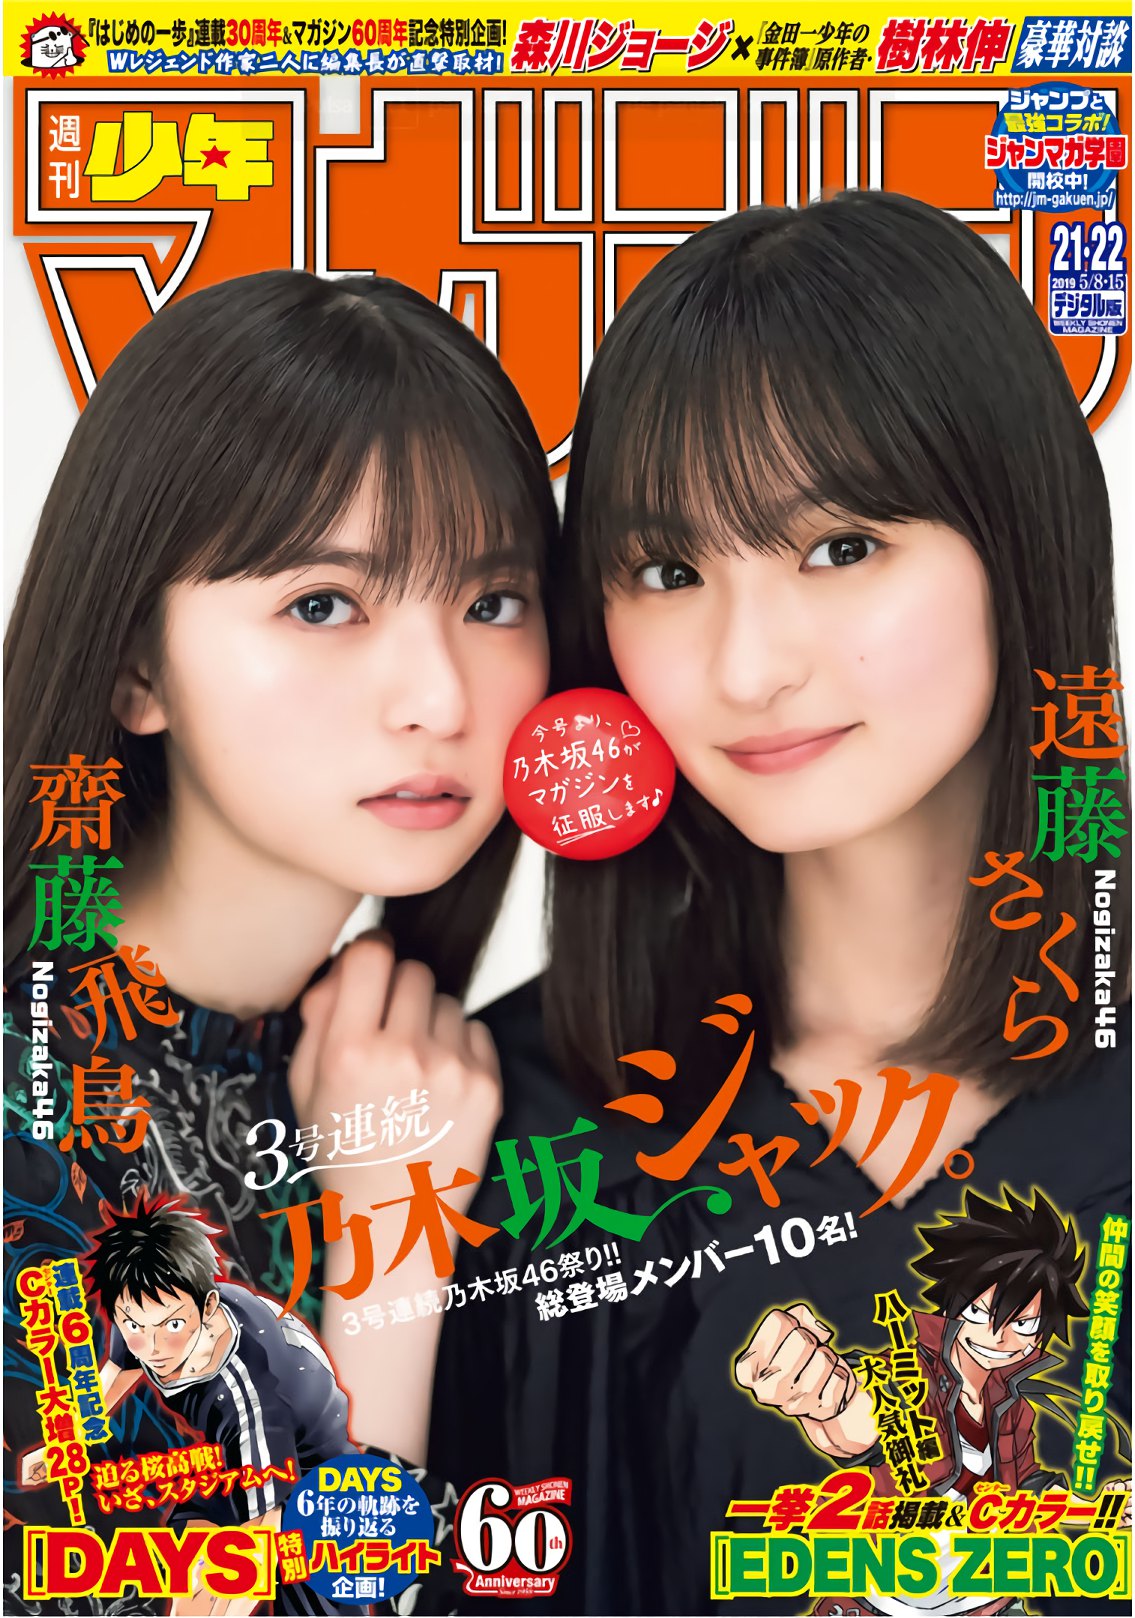 [Shonen Magazine] 2019.21 22号 齋藤飛鳥＆遠藤さくら